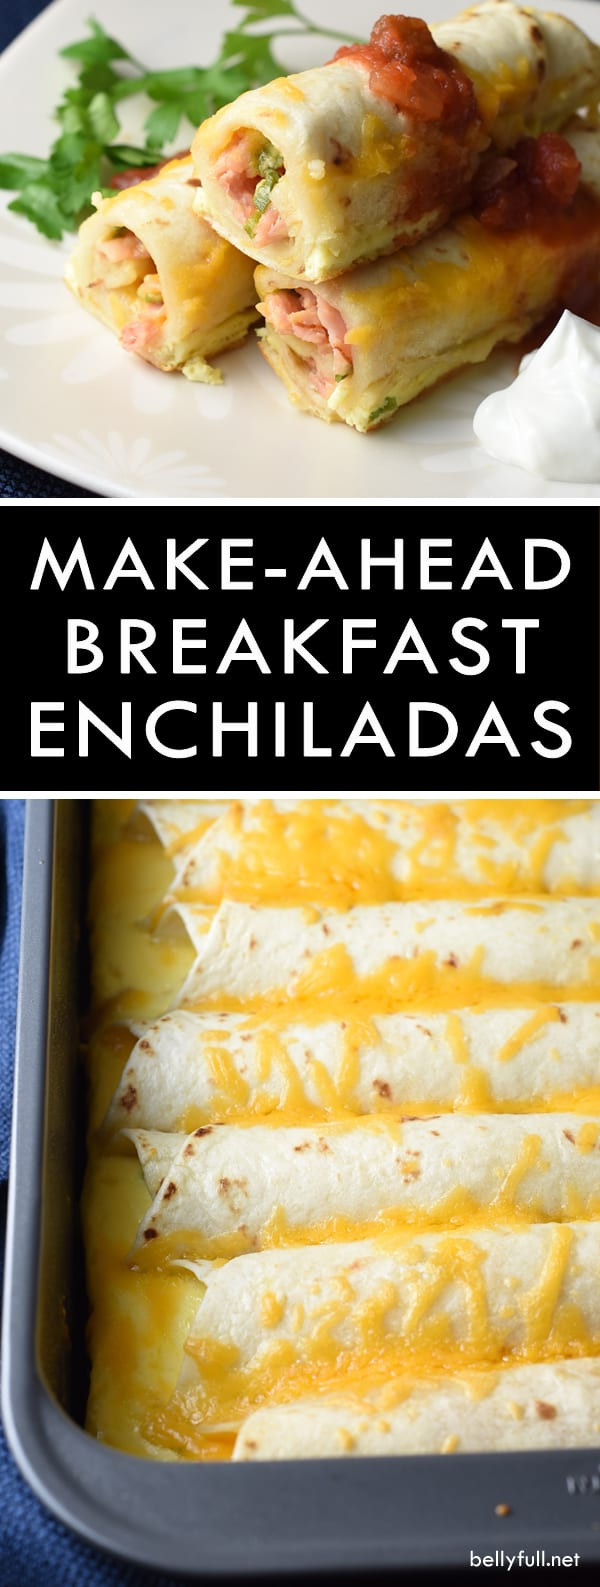 Make Ahead Enchiladas
 Make Ahead Breakfast Enchiladas